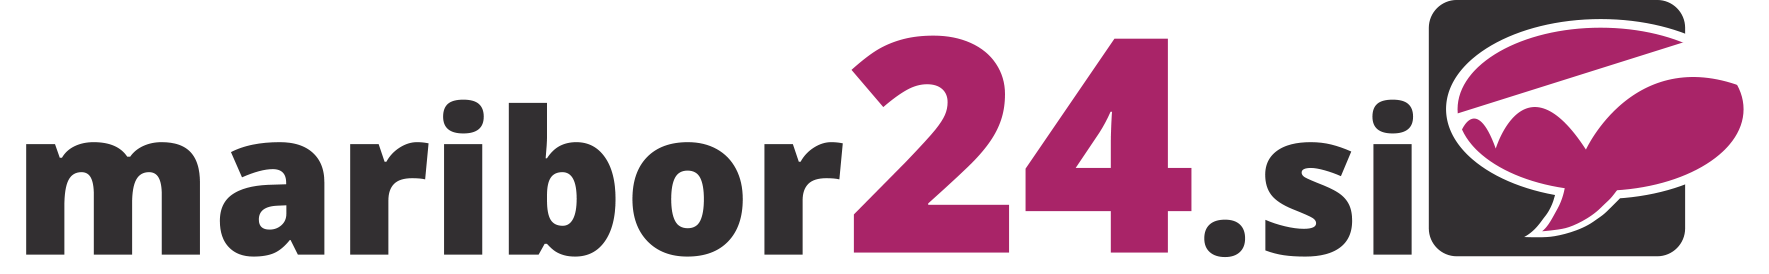 mb24_logo.png